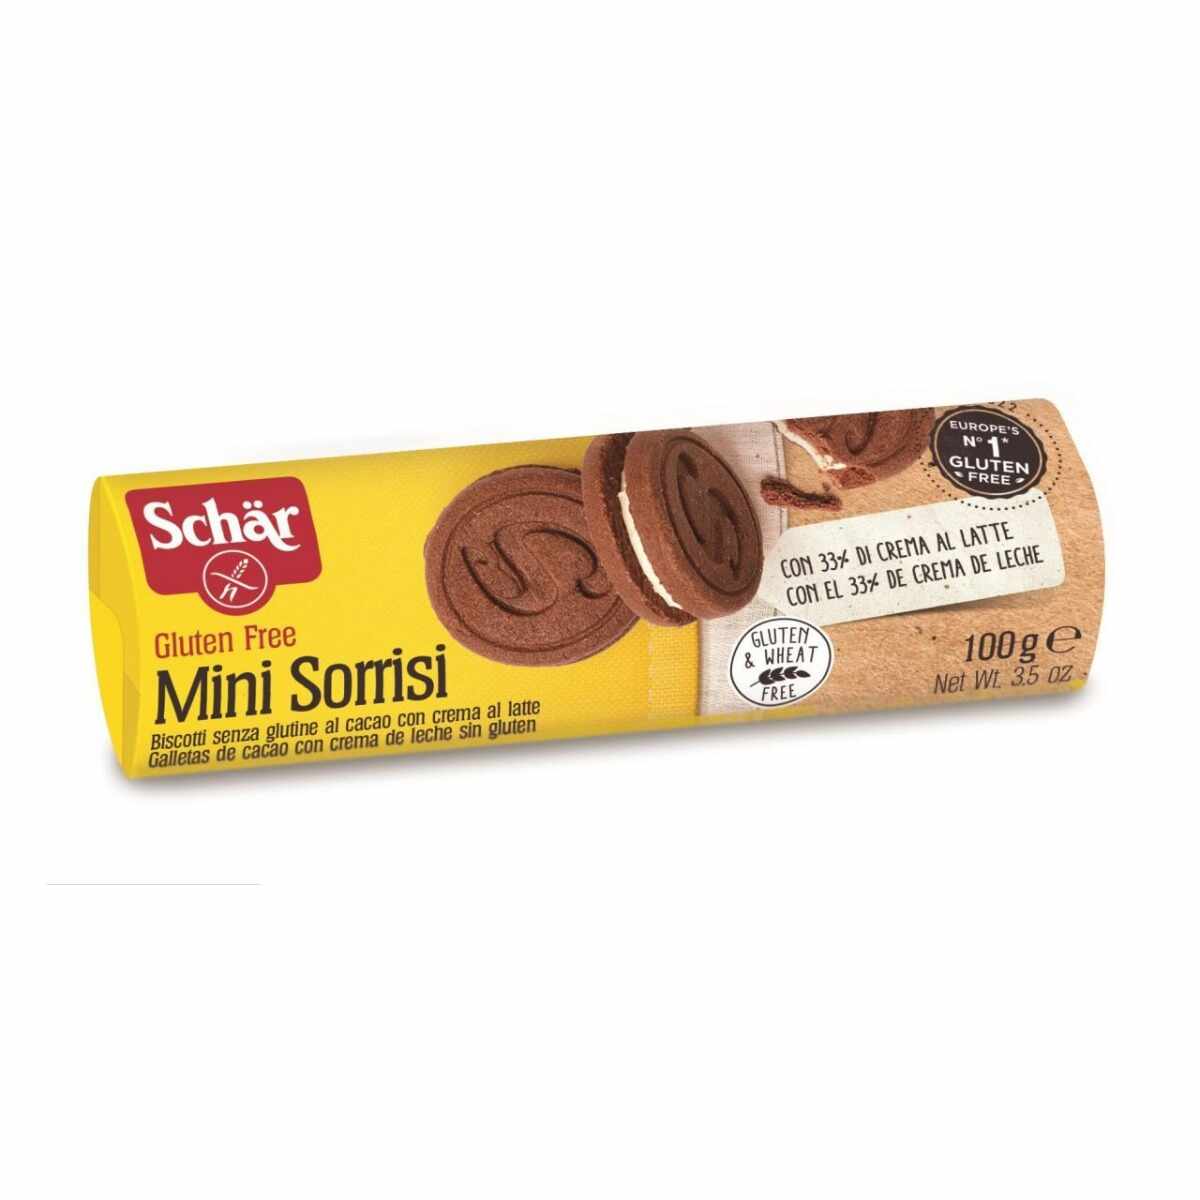 Biscuiti fara gluten cu cacao si crema de lapte Mini Sorrisi, 100g, Schar